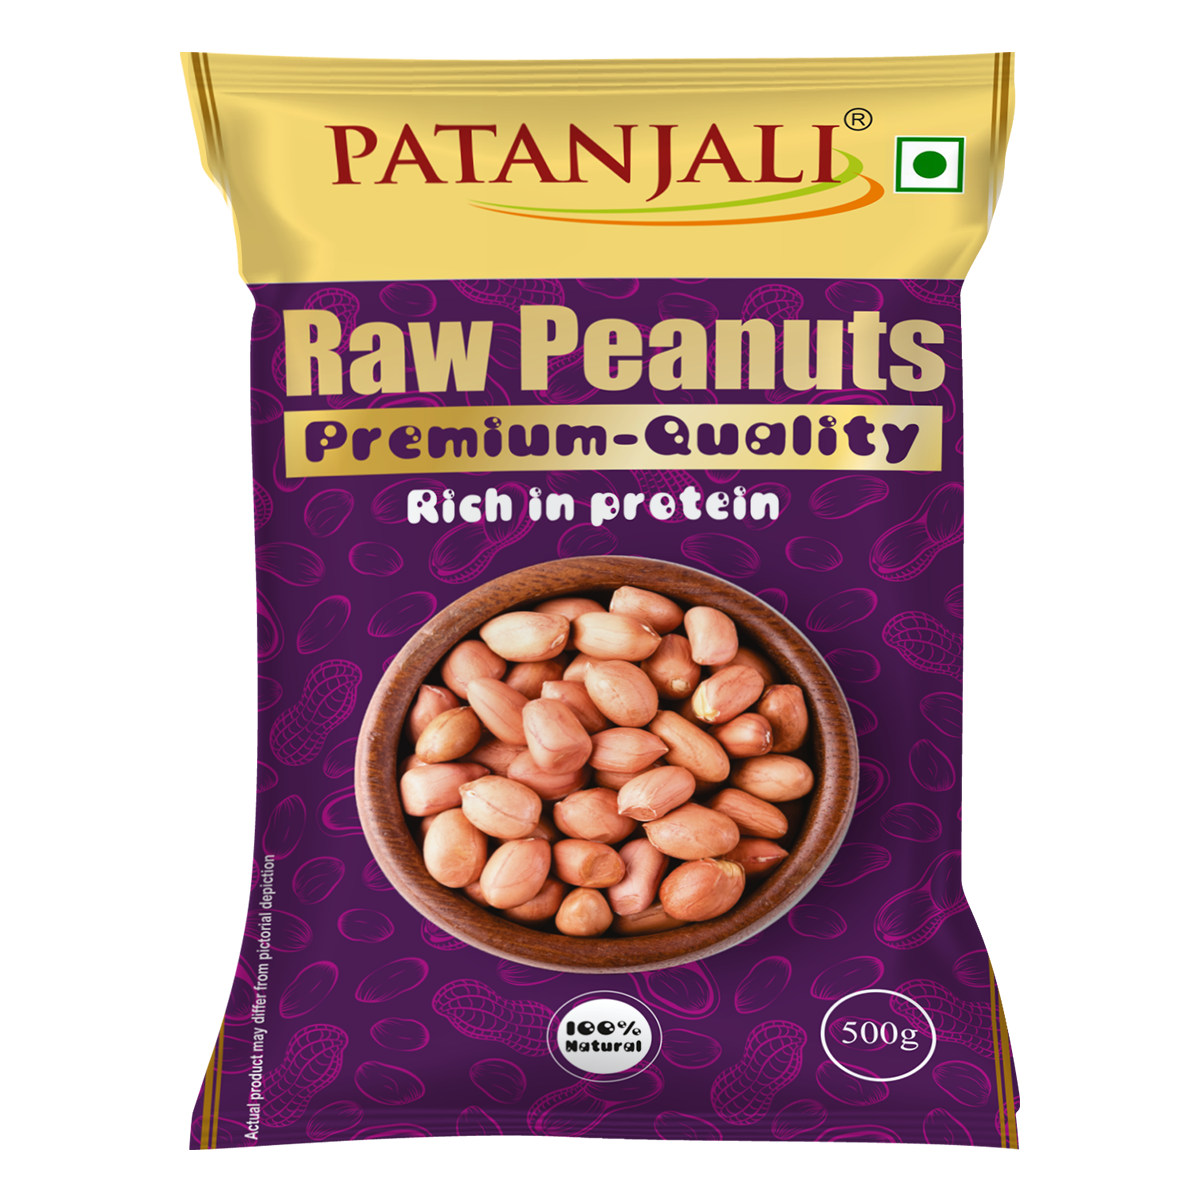 Patanjali Raw Peanuts